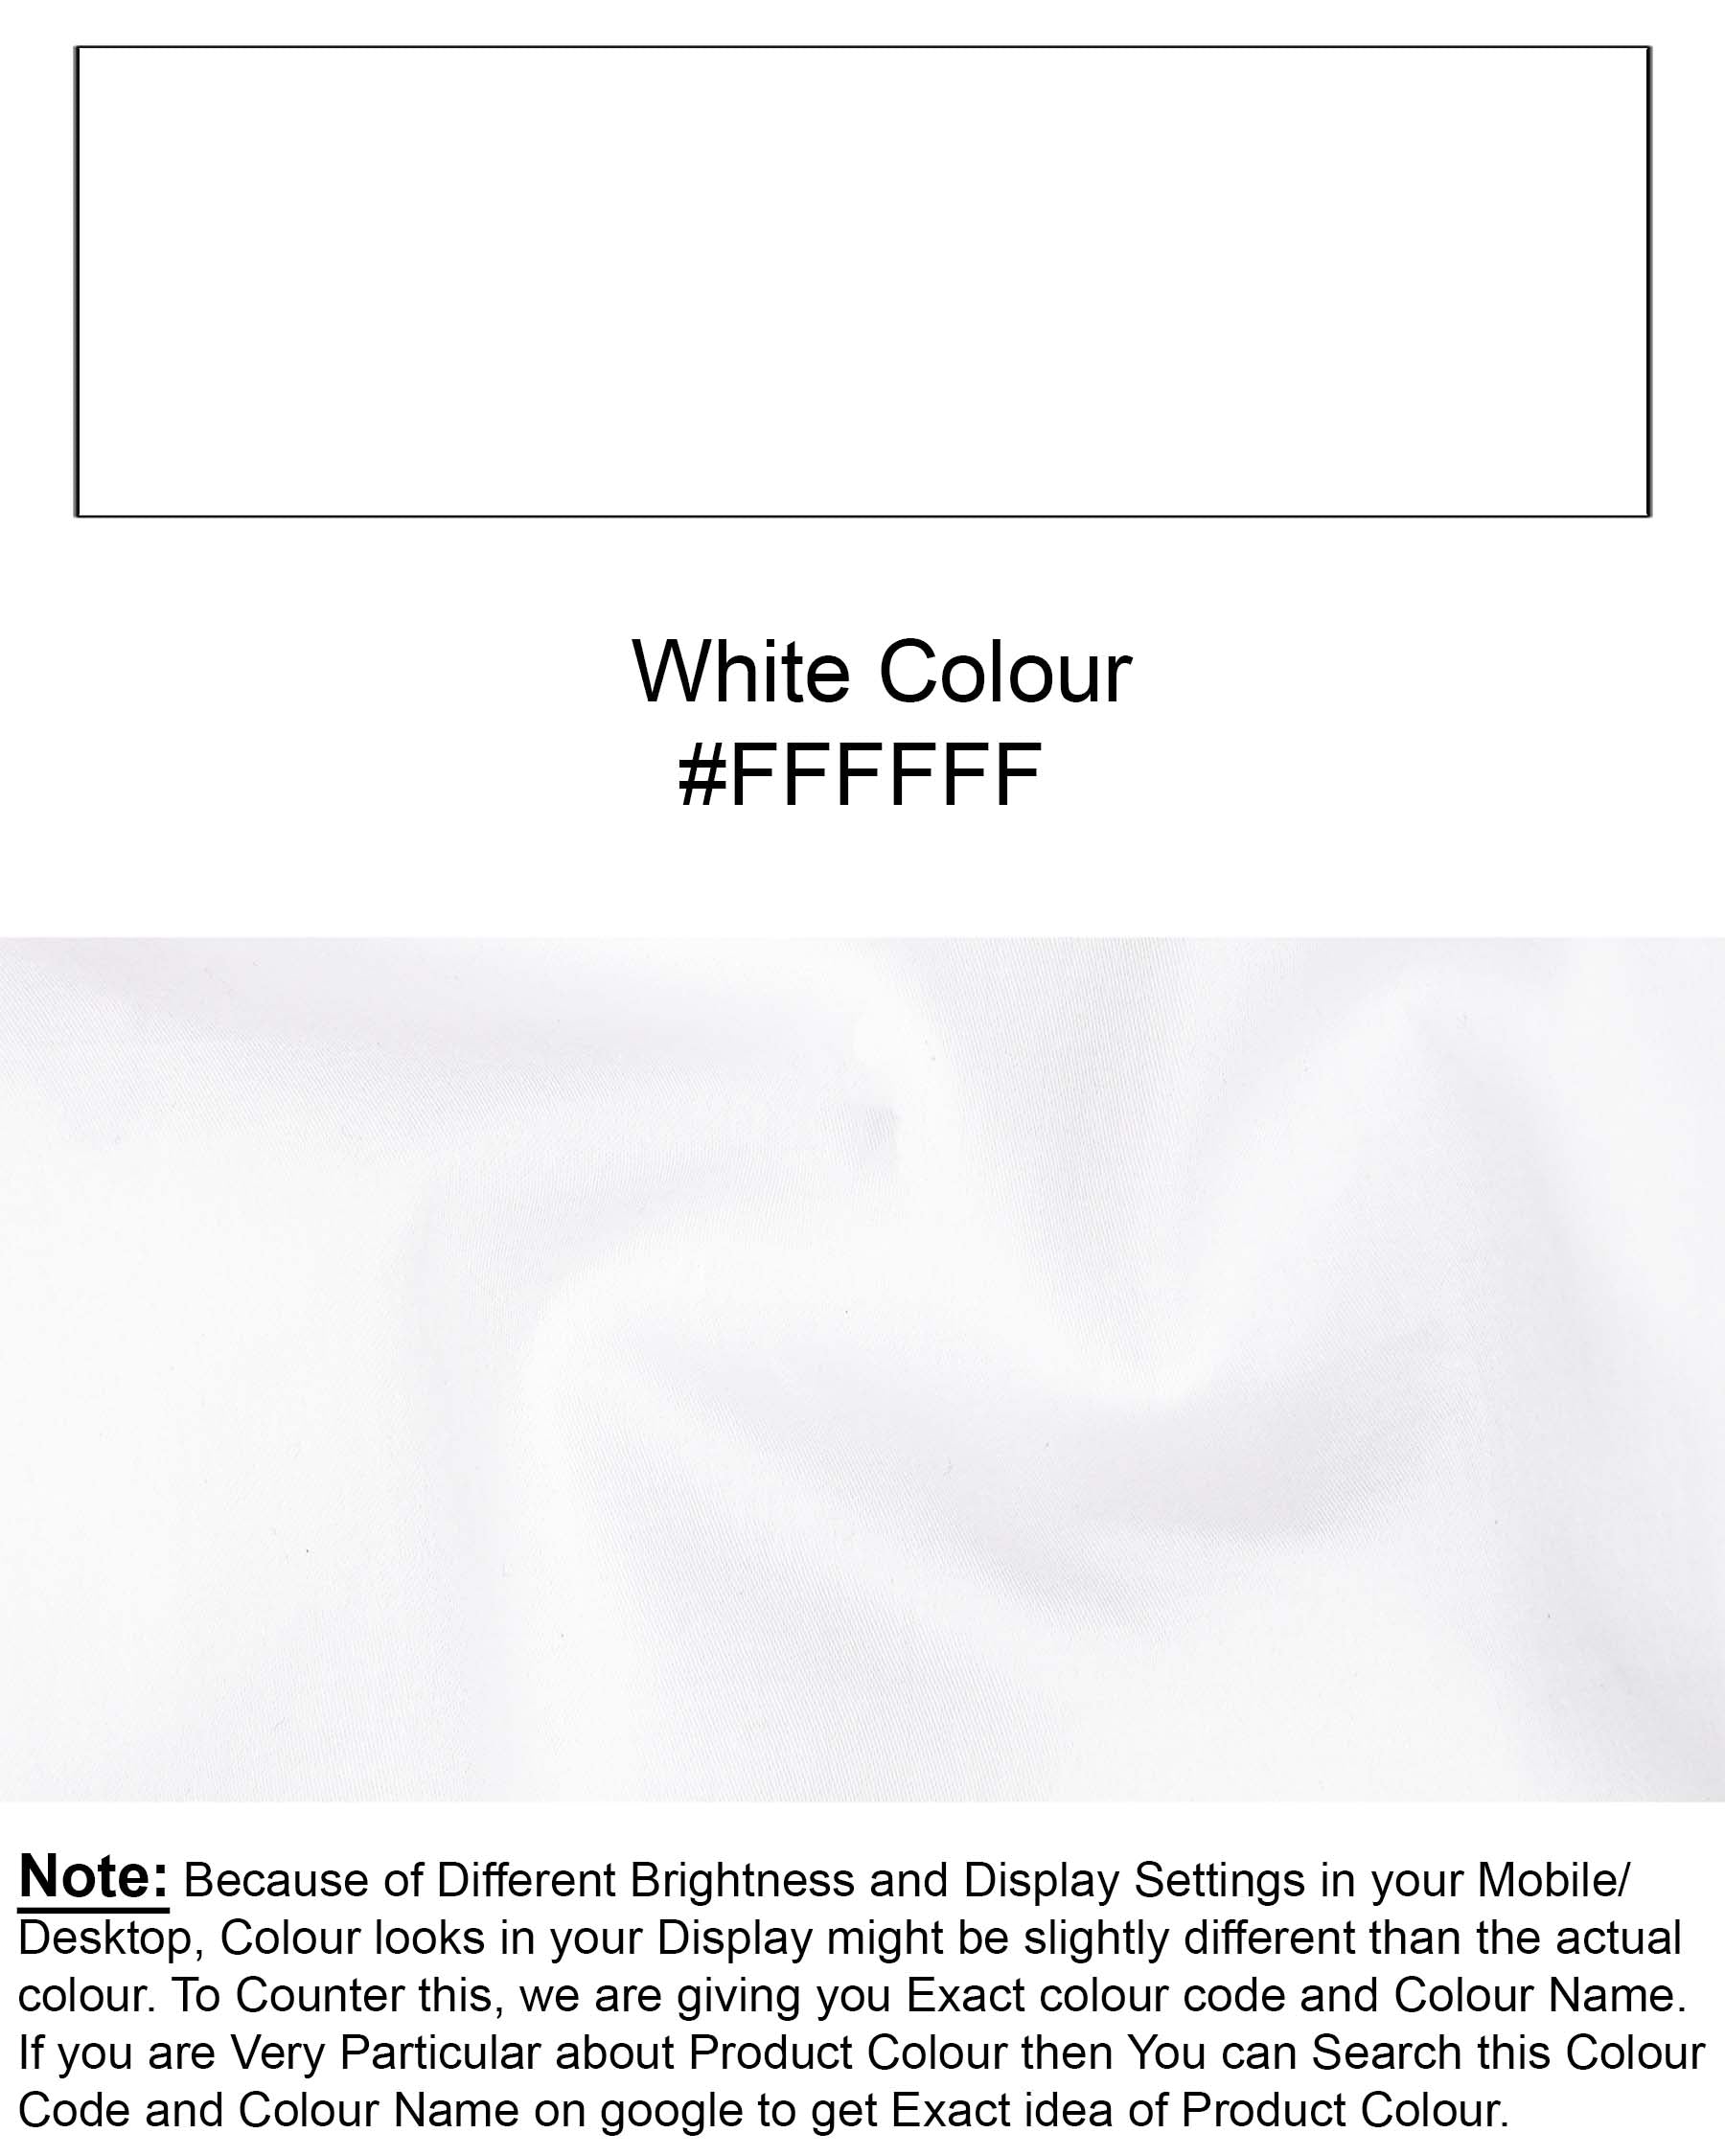 Bright White Side Pockets Super Soft Premium Cotton Shirt 7474-M-BLK-P365-38, 7474-M-BLK-P365-H-38, 7474-M-BLK-P365-39, 7474-M-BLK-P365-H-39, 7474-M-BLK-P365-40, 7474-M-BLK-P365-H-40, 7474-M-BLK-P365-42, 7474-M-BLK-P365-H-42, 7474-M-BLK-P365-44, 7474-M-BLK-P365-H-44, 7474-M-BLK-P365-46, 7474-M-BLK-P365-H-46, 7474-M-BLK-P365-48, 7474-M-BLK-P365-H-48, 7474-M-BLK-P365-50, 7474-M-BLK-P365-H-50, 7474-M-BLK-P365-52, 7474-M-BLK-P365-H-52